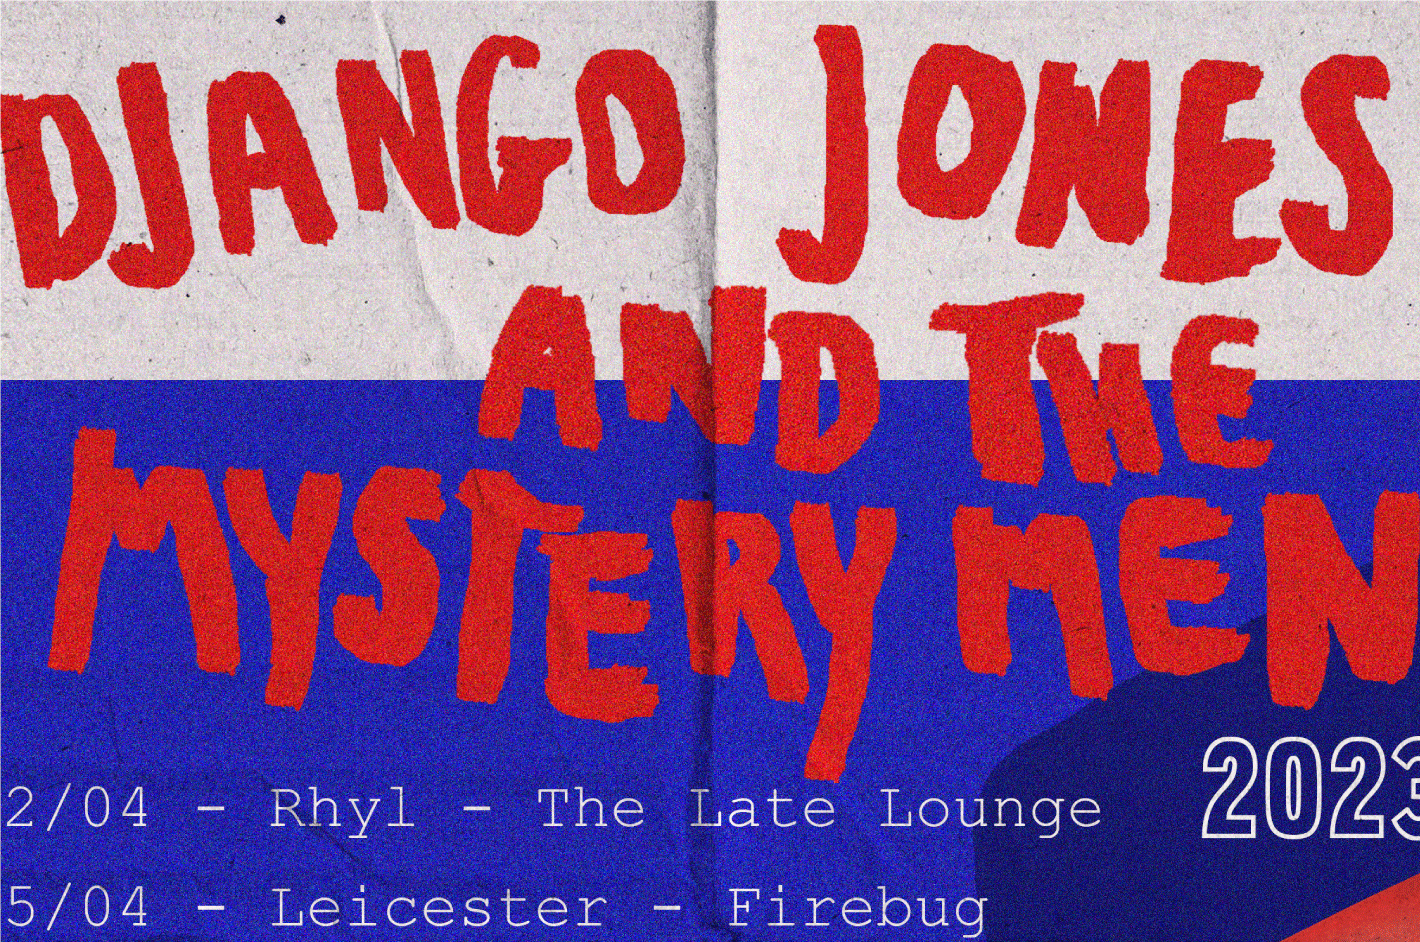 Django Jones and the Mystery Men